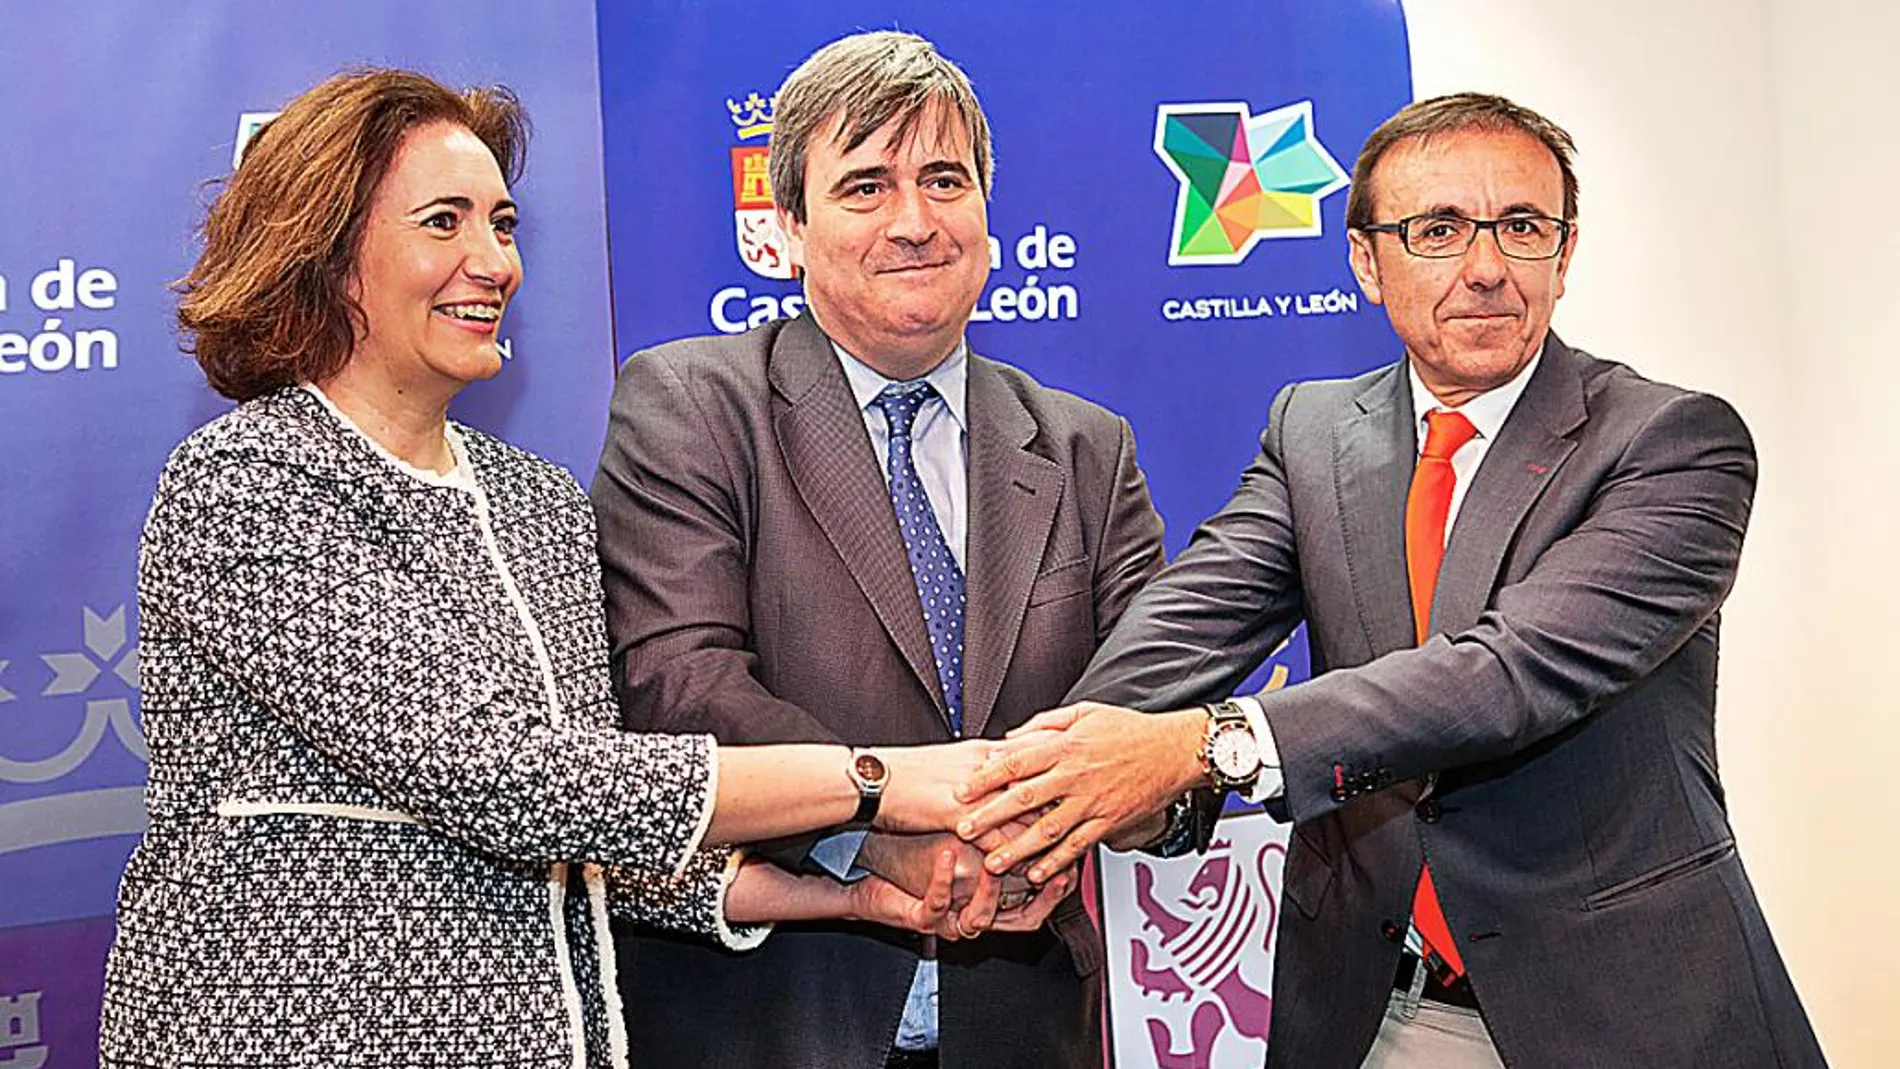 La consejera de Cultura y Turismo, María Josefa García Cirac, junto a Miguel Cardenal y José Hidalgo Martín